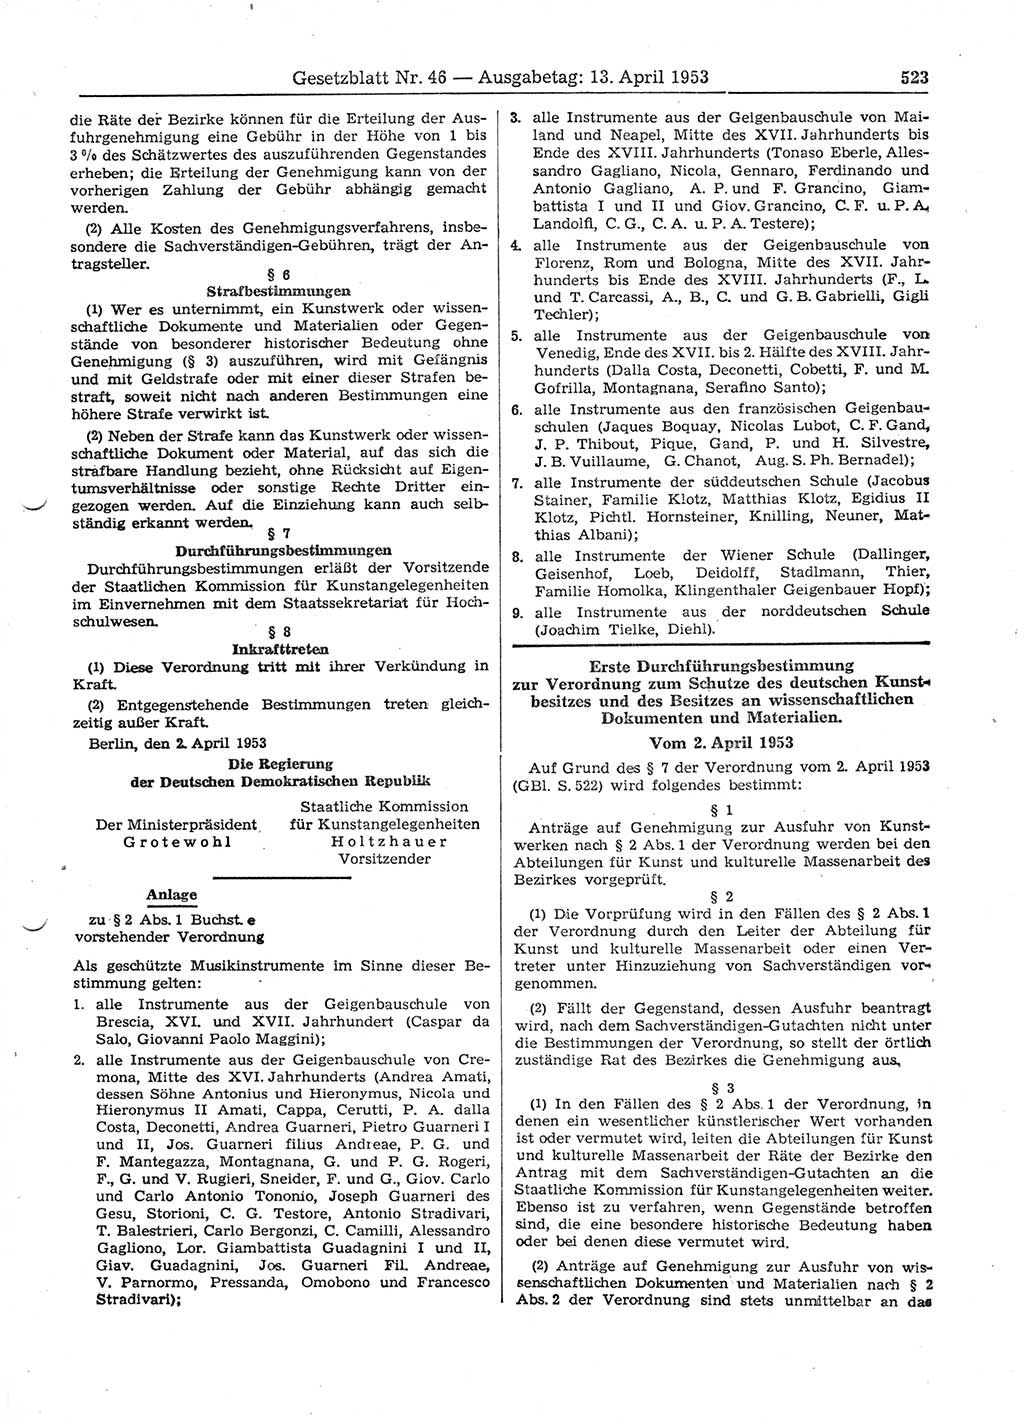 Gesetzblatt (GBl.) der Deutschen Demokratischen Republik (DDR) 1953, Seite 523 (GBl. DDR 1953, S. 523)